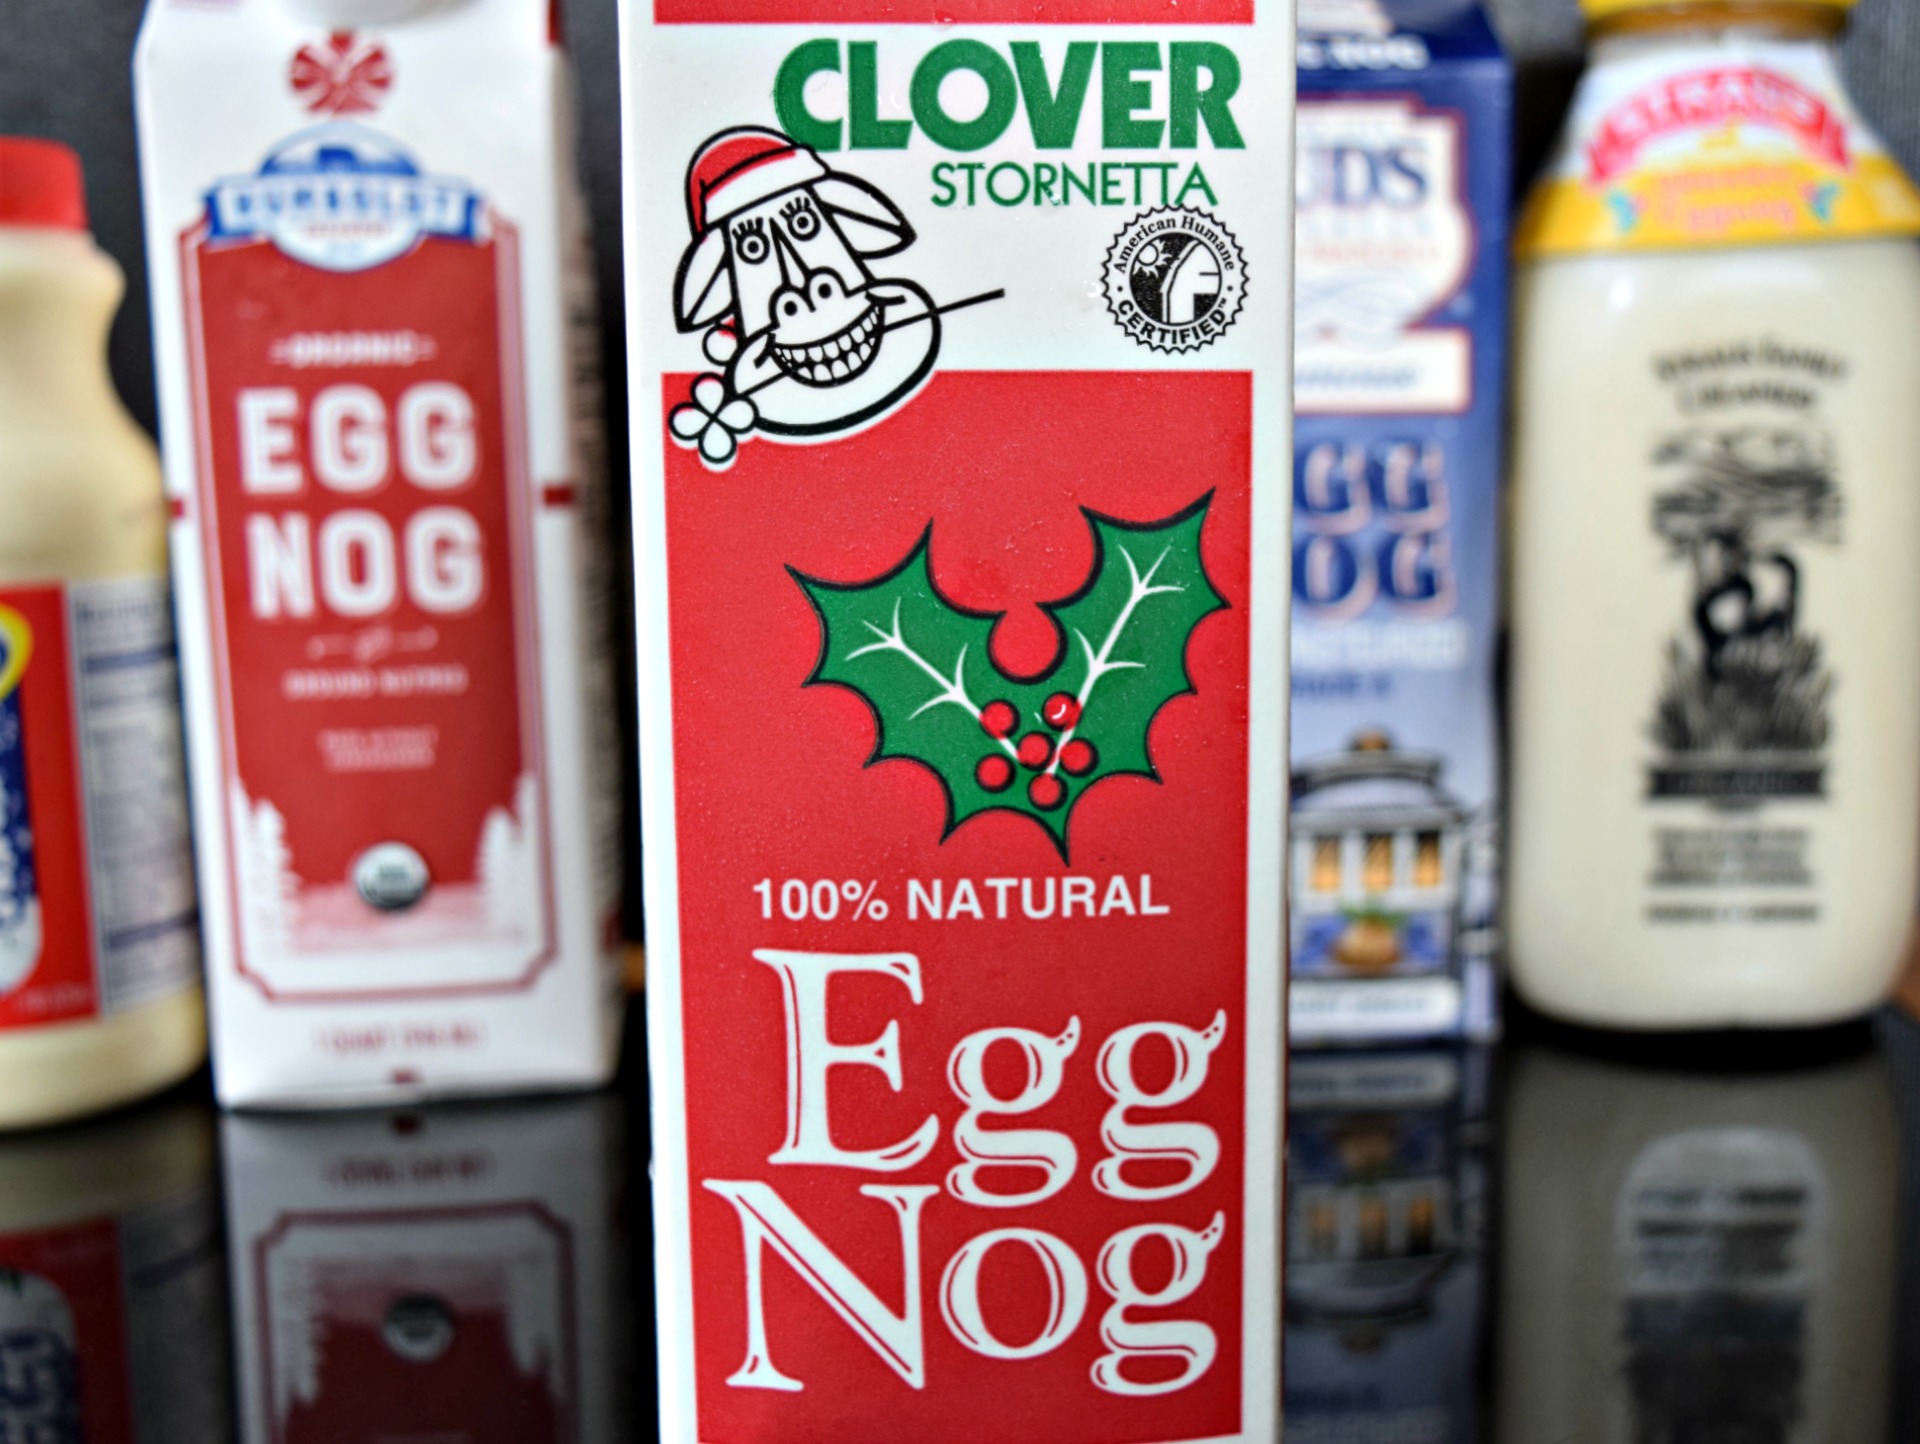 Another Petaluma nog: Clover's eggnog